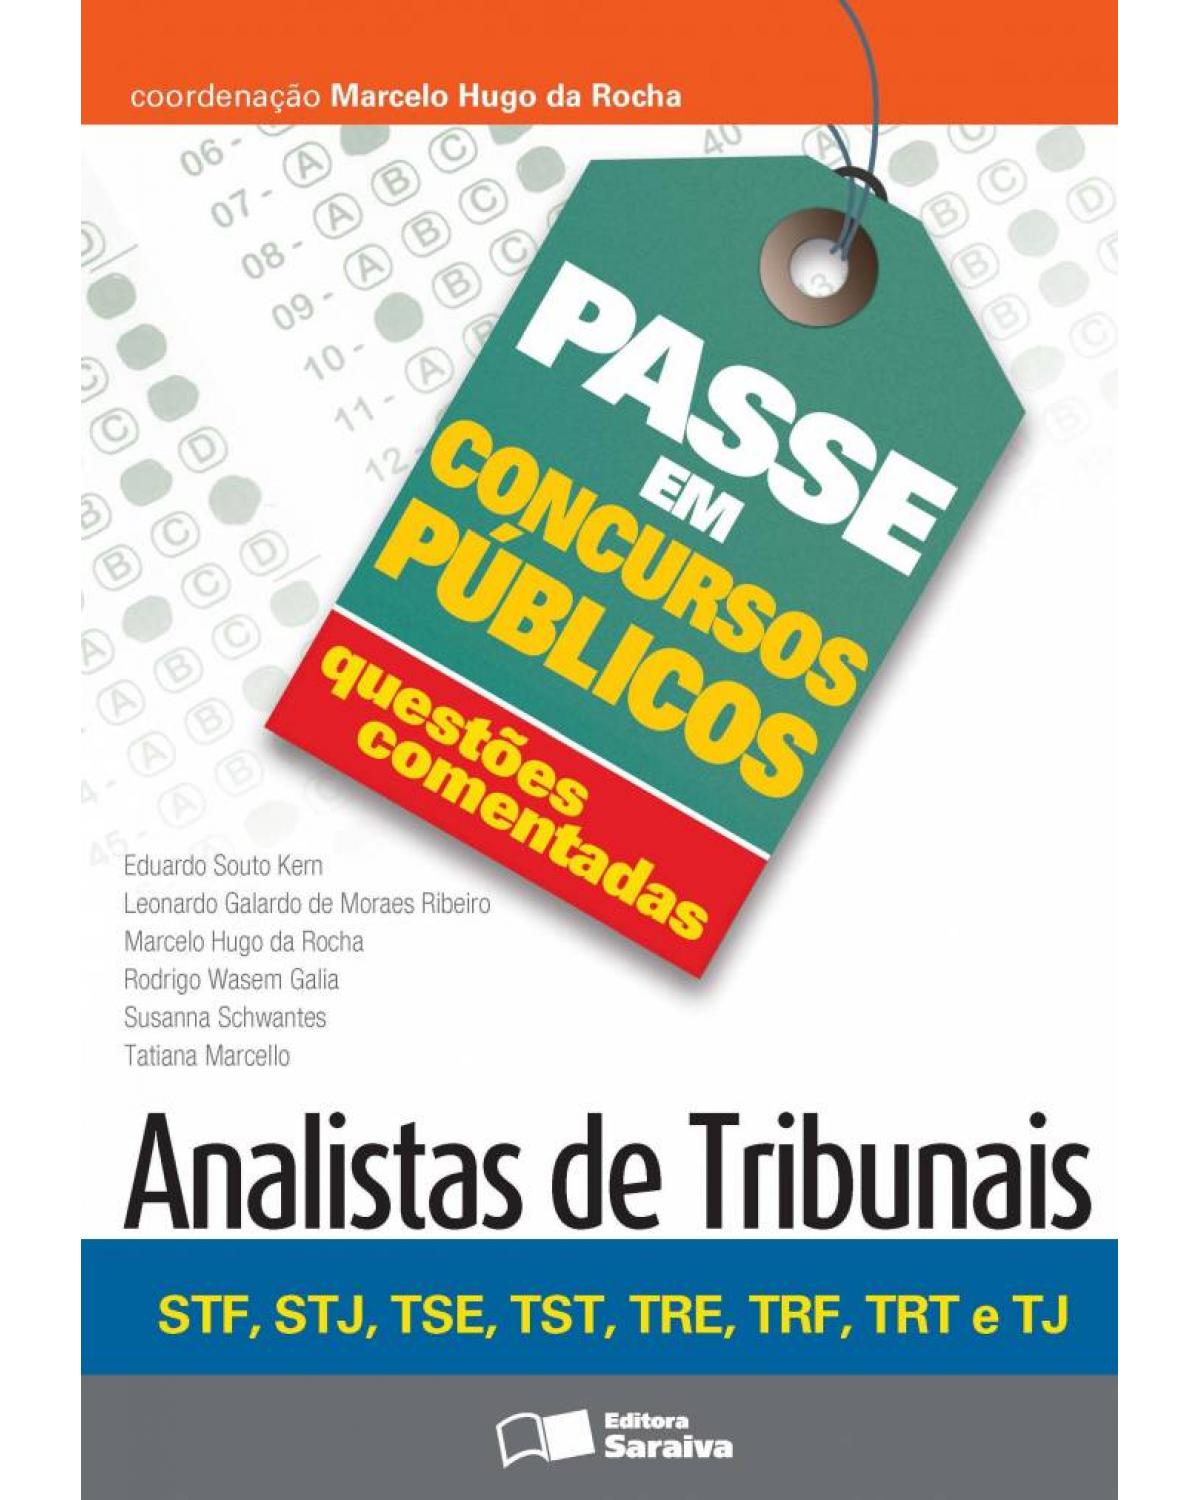 Analistas de tribunais - STF, STJ, TSE, TST, TRE, TRF, TRT e TJ - 1ª Edição | 2013